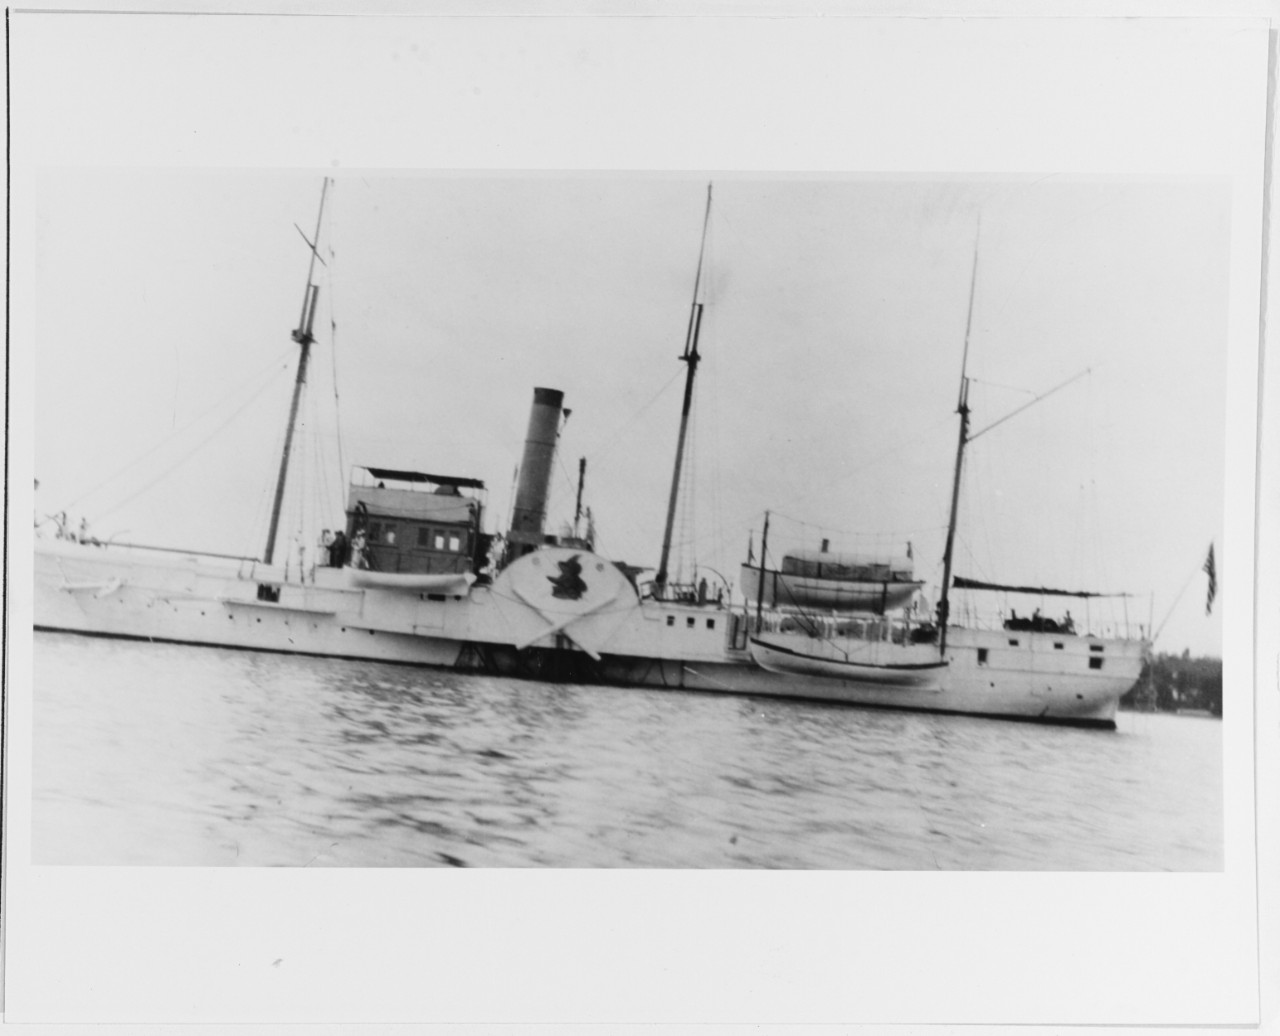 USS WOLVERINE (ex-MICHIGAN, 1844-1946)